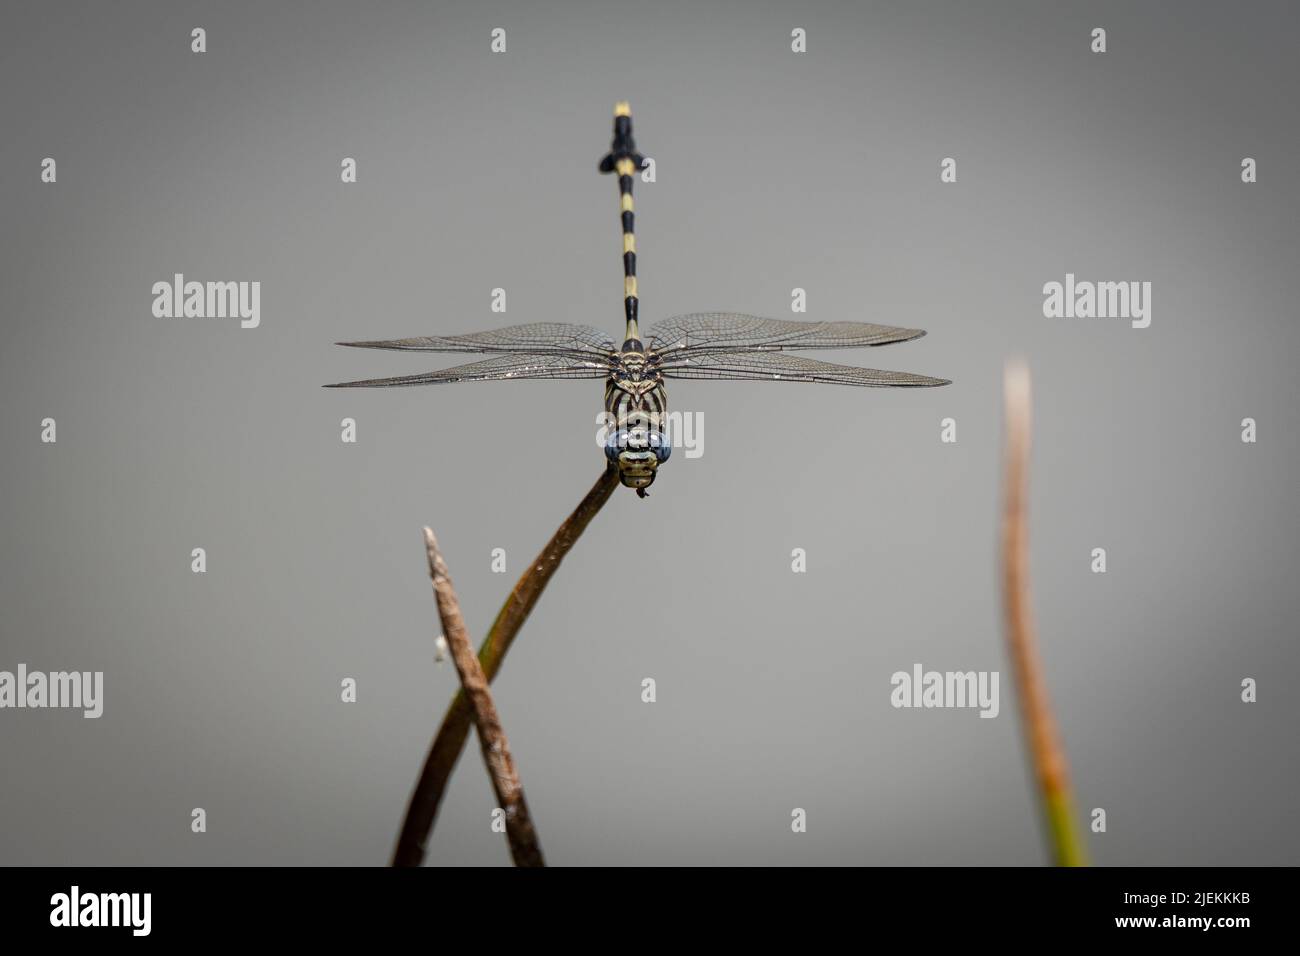 Ictinogomphus ferox, comunemente chiamato la tigre comune o la tigertail comune dragonfly. Saadani Tanzania. Foto: Garyroberts/worldwidefeatures.com Foto Stock